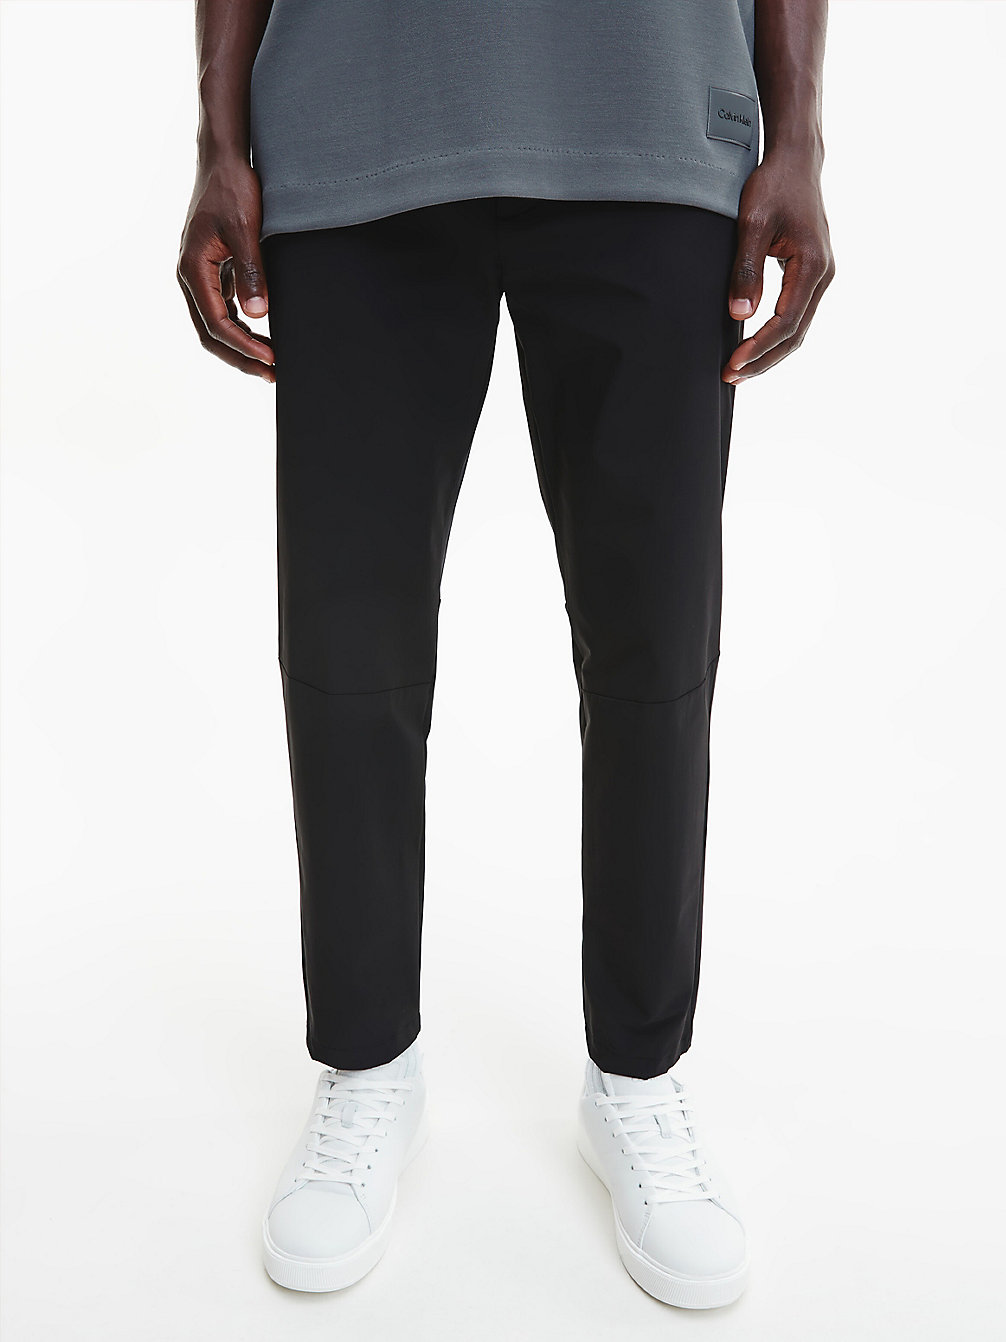 CK BLACK Pantalon Fuselé En Sergé Élastique undefined hommes Calvin Klein